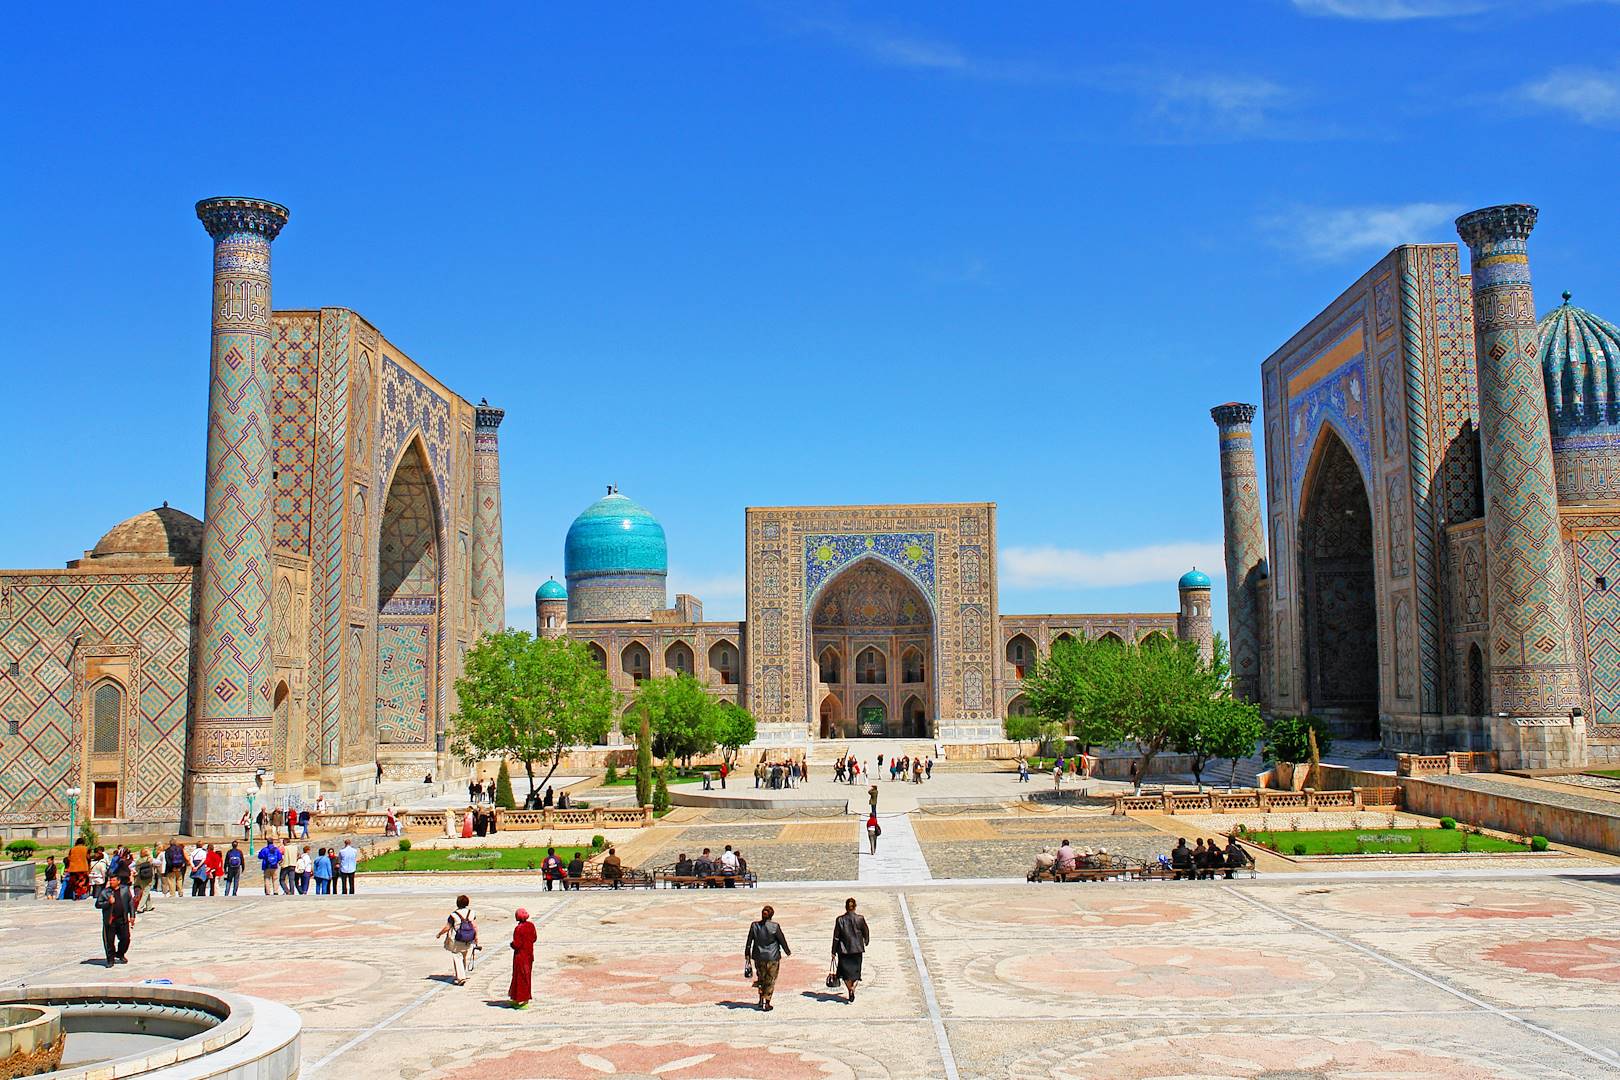 visiteurs voyage ouzbekistan